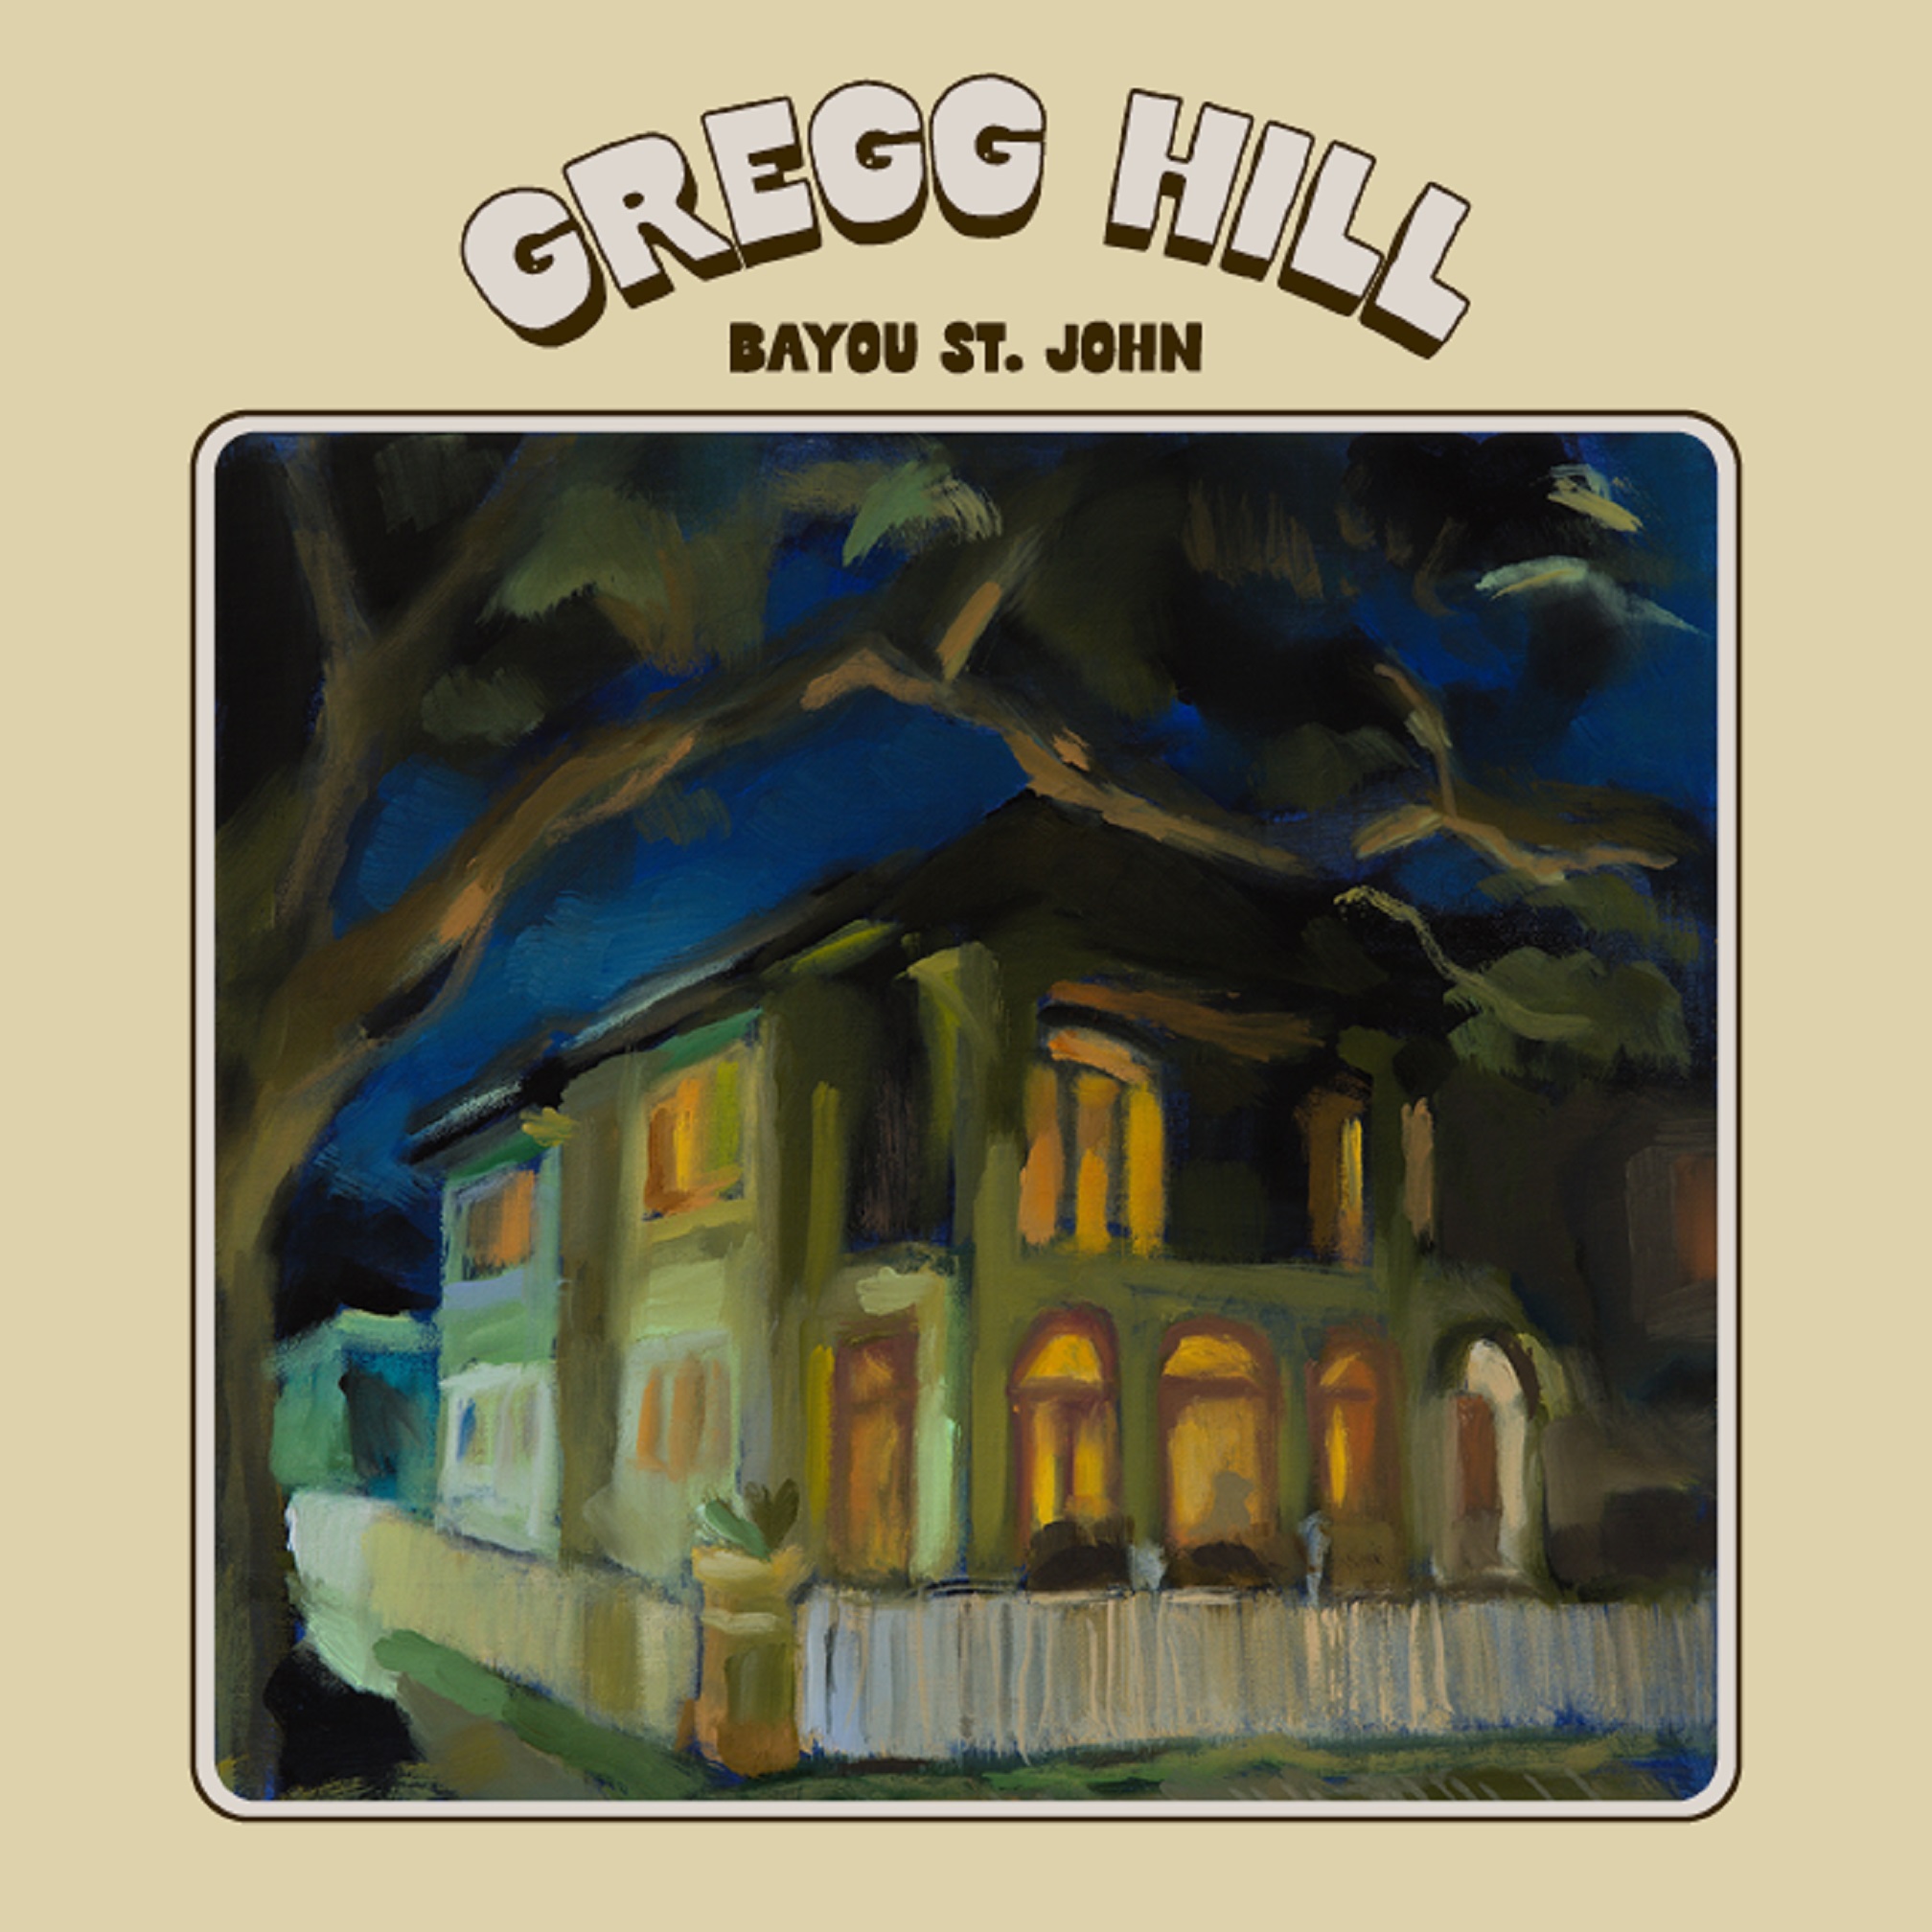 New Orleans-Based Singer-Songwriter Gregg Hill Releases 'Bayou St. John' Sept. 15